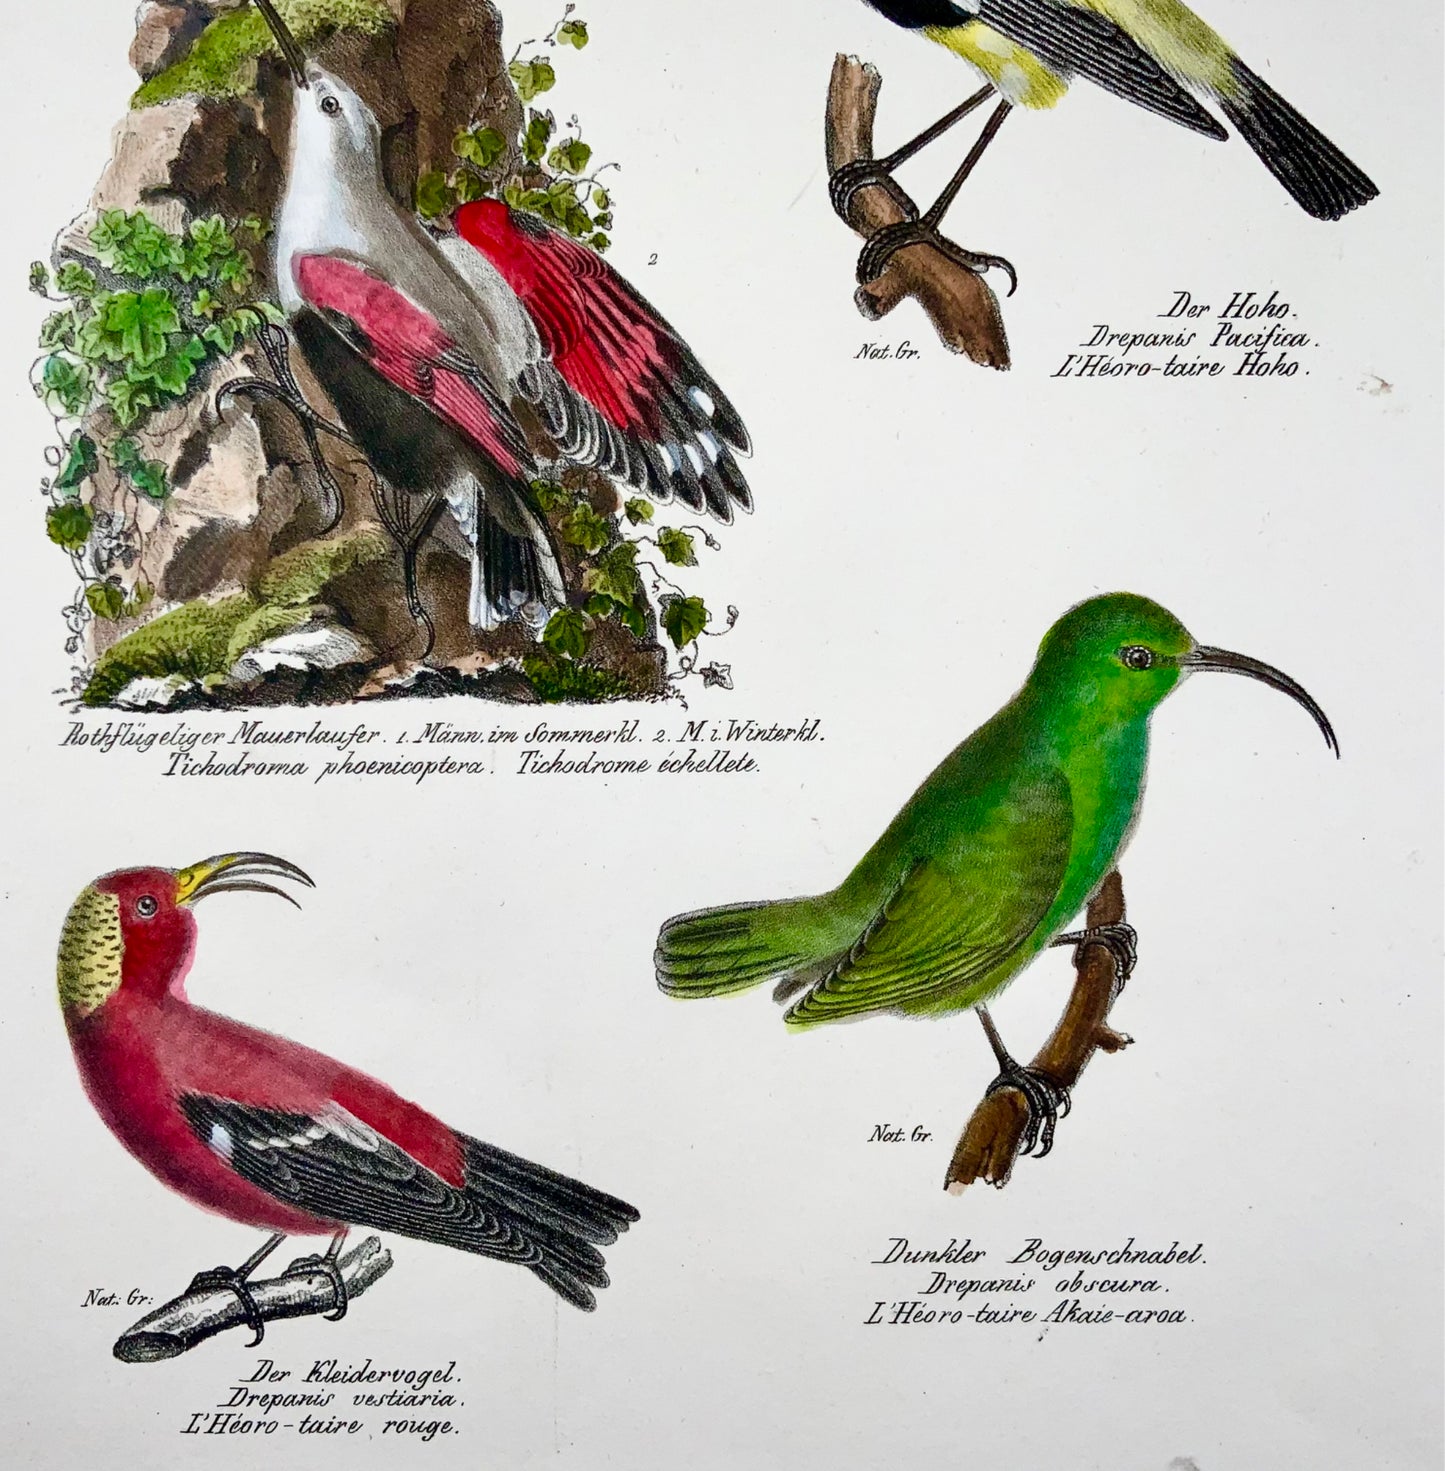 1830 Drepanis Wallcreeper, ornithologie, Brodtmann, folio, lithographie